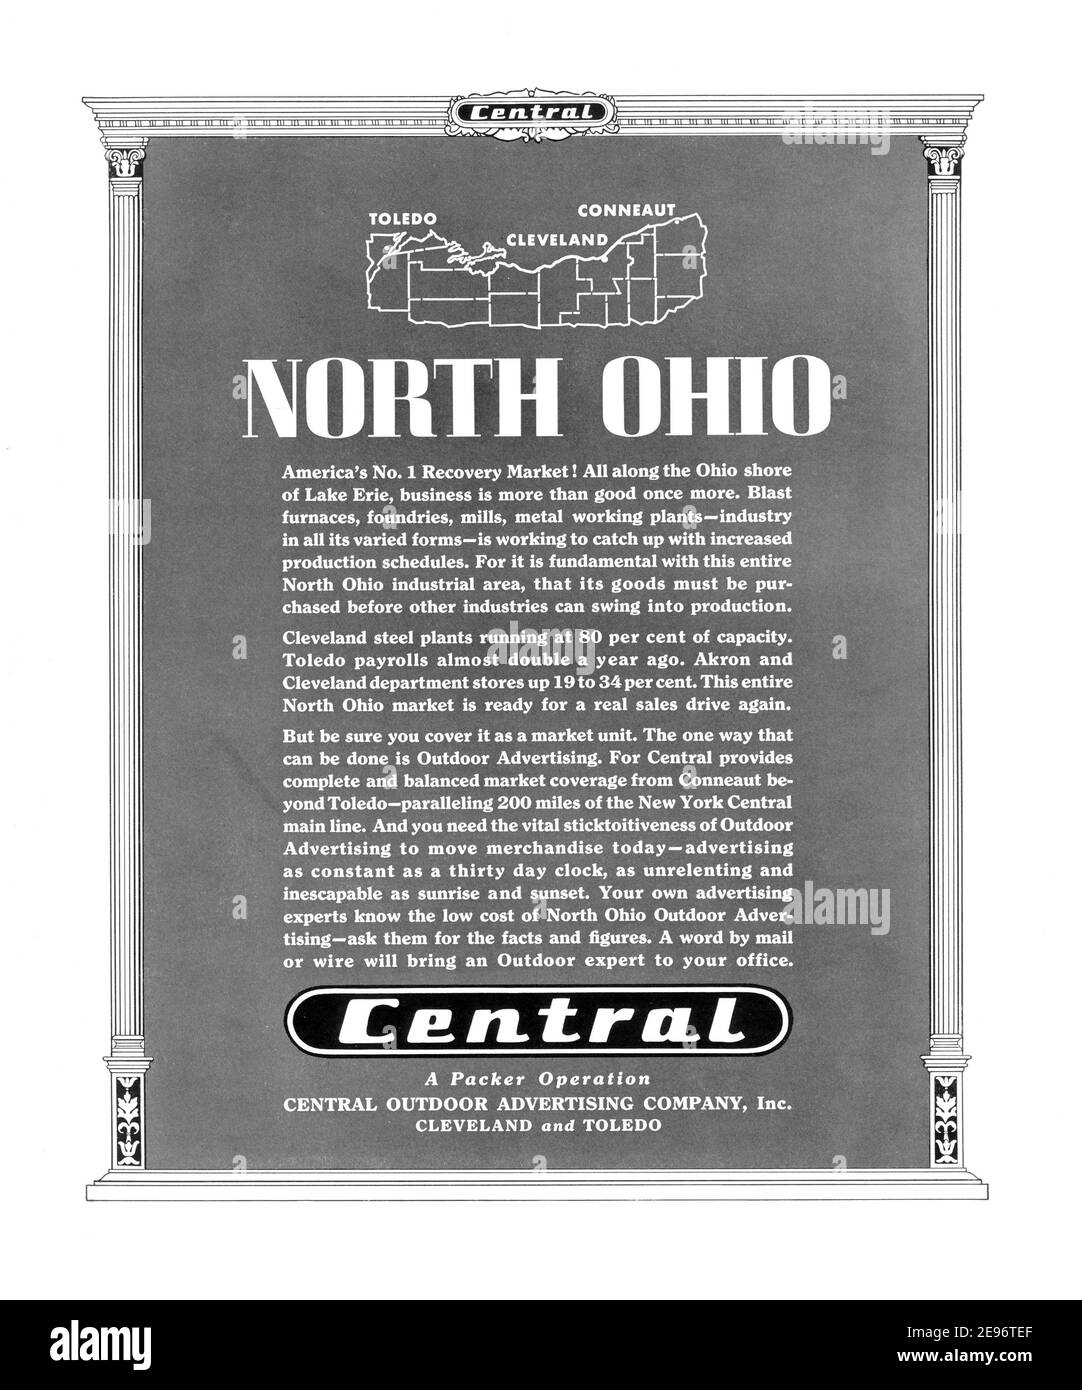 1935 North Ohio Central Outdoor Advertising Company 'le marché de récupération numéro 1 de l'Amérique!' Publicité, retouchée et ravivée, A3+, 600 dpi Banque D'Images